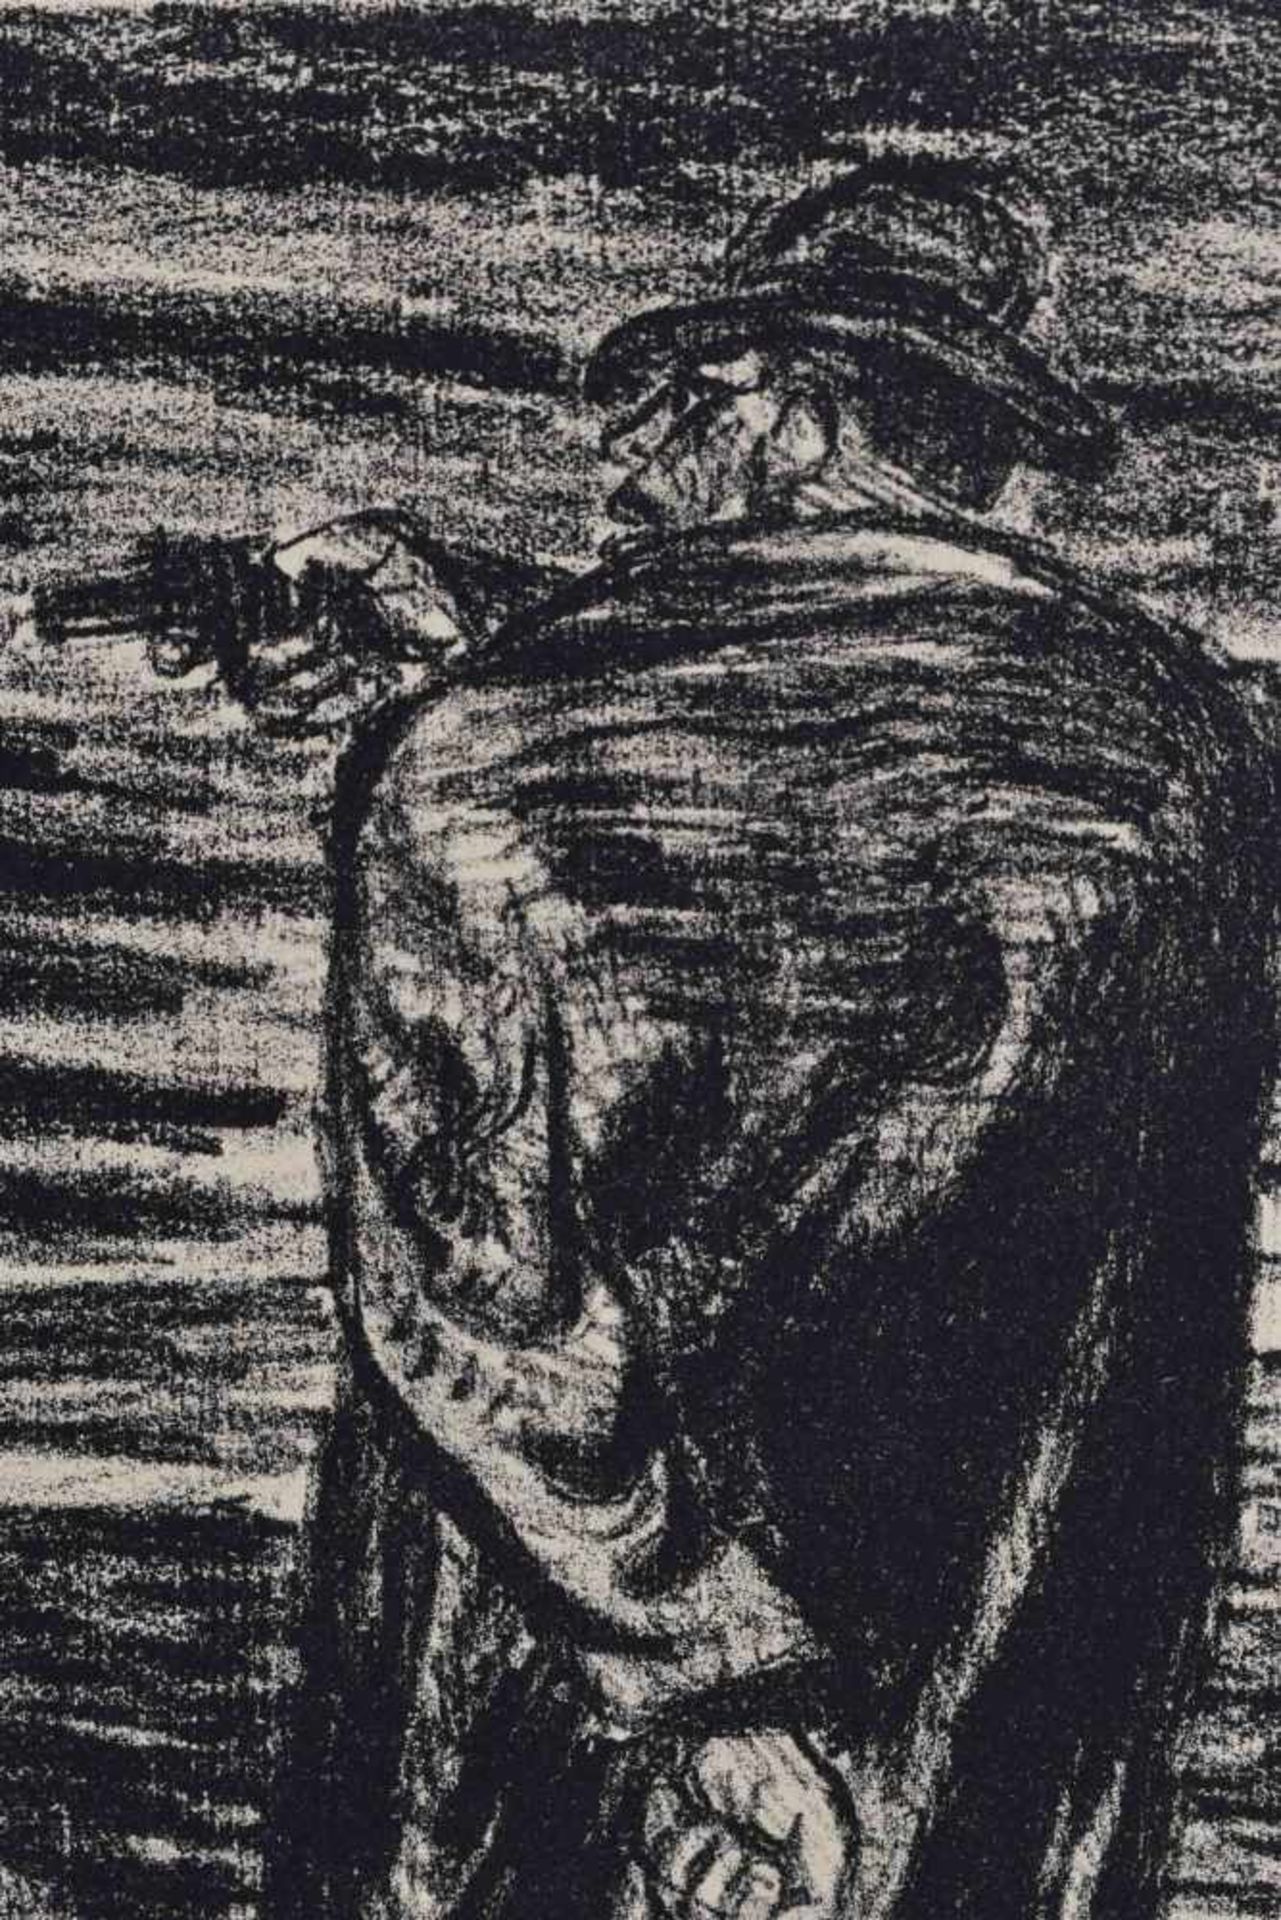 Ernst BARLACH (1870-1938)"Der Mord"Grafik-Lithographie, Maße 34 cm x 49 cm,2 % Bildkunst/ - Bild 4 aus 4